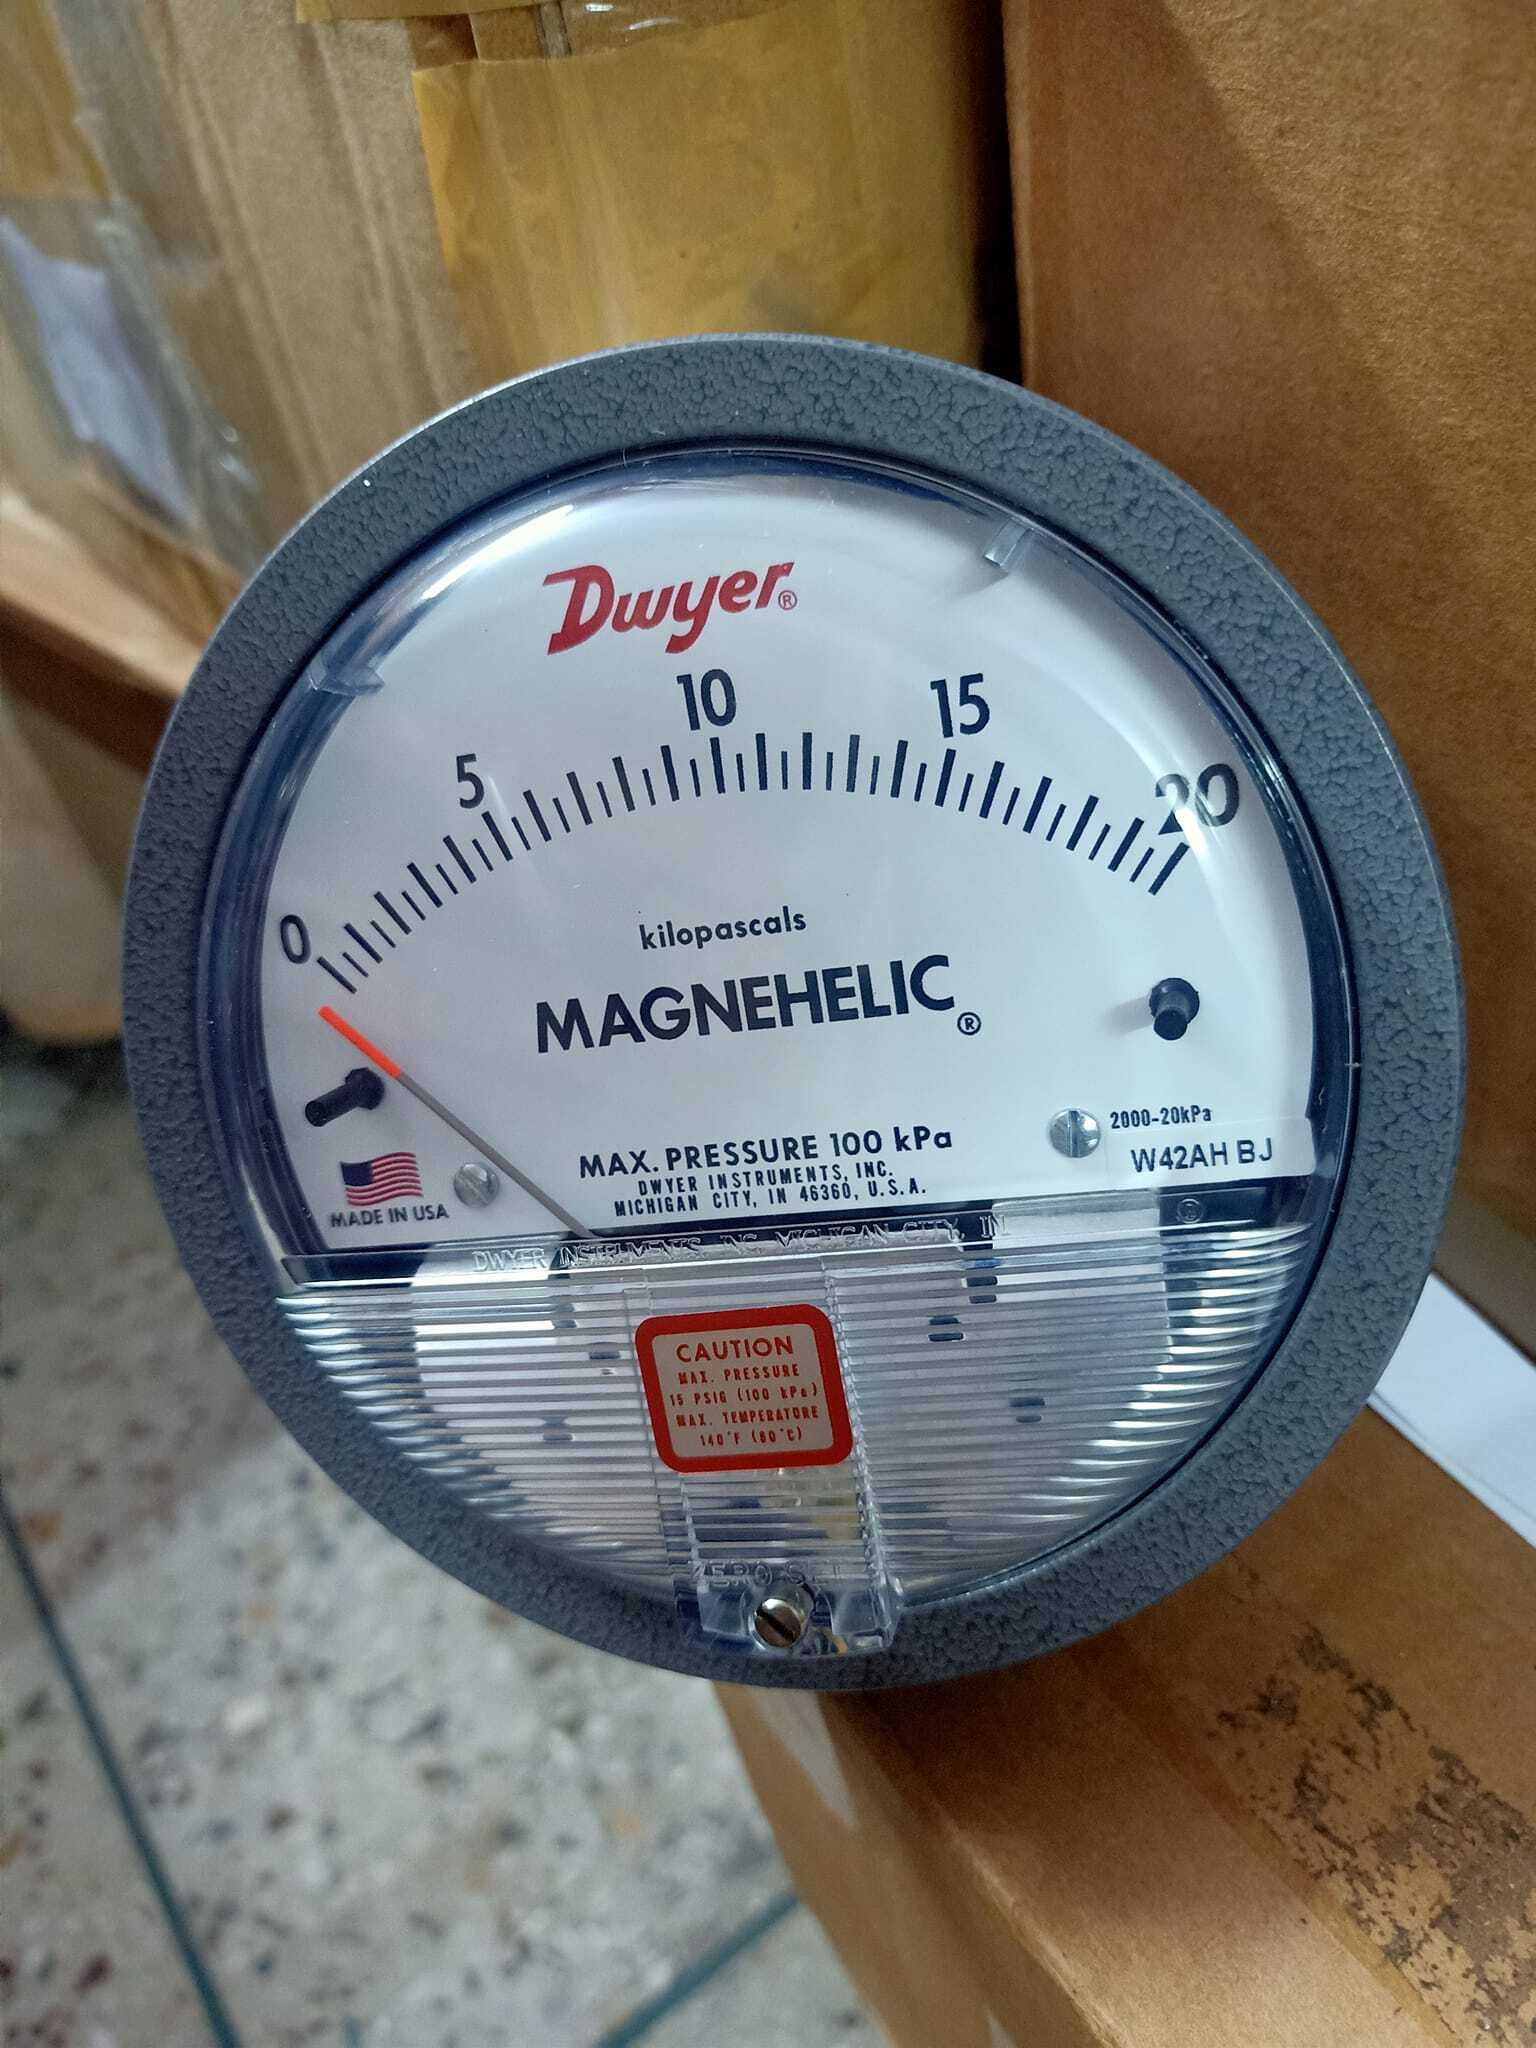 Dwyer Magnehelic Gauge Distributor In Thiruvananthapuram Kerala India